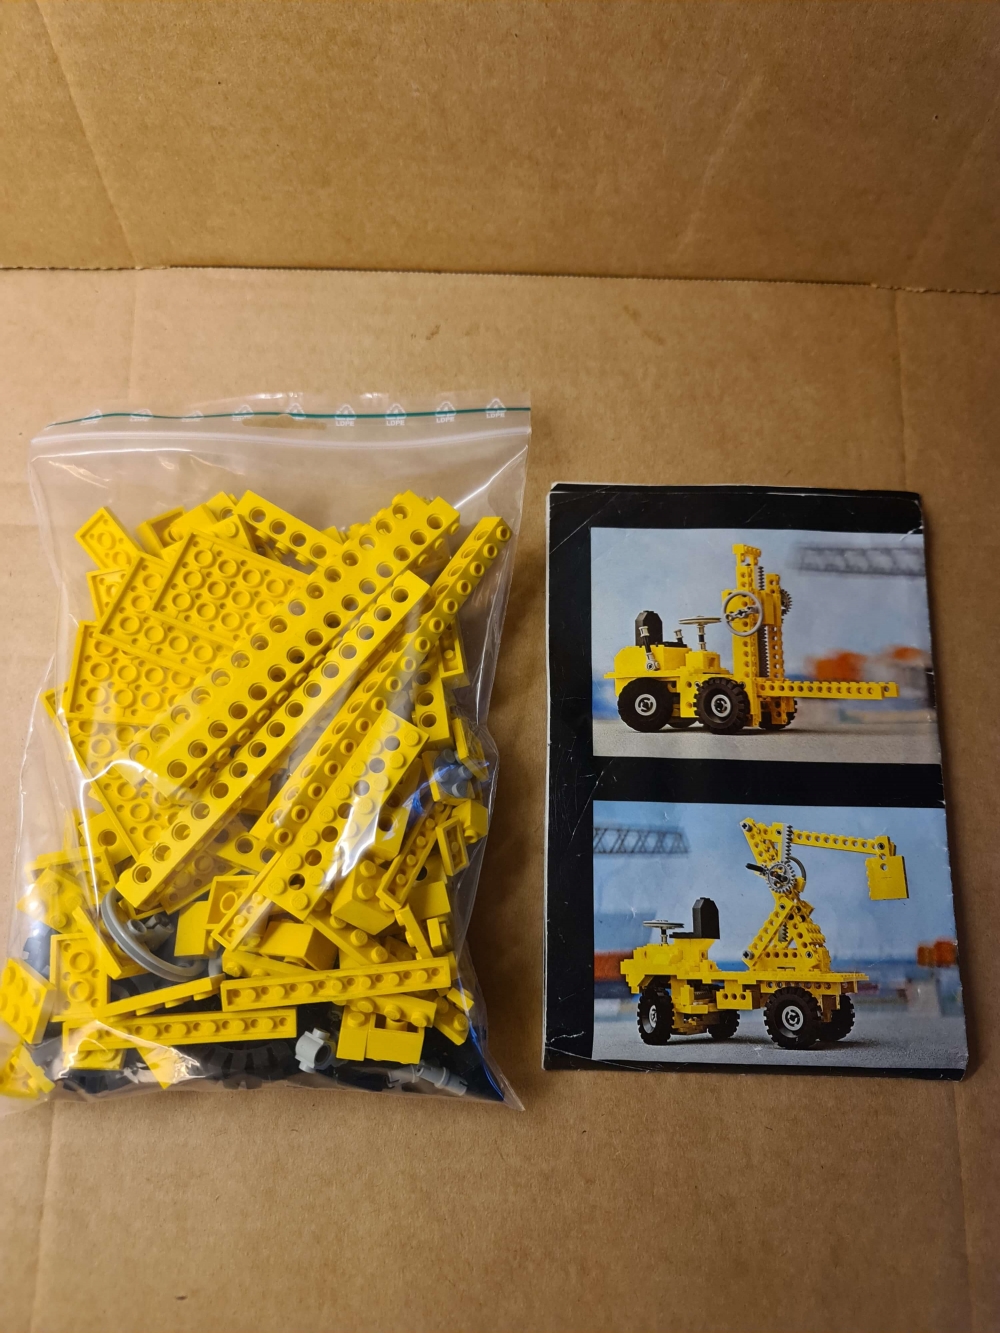 Sett 850 fra Lego Technic serien.
Pent sett. Komplett med manual til alternative modeller. Hovedmanual mangler.